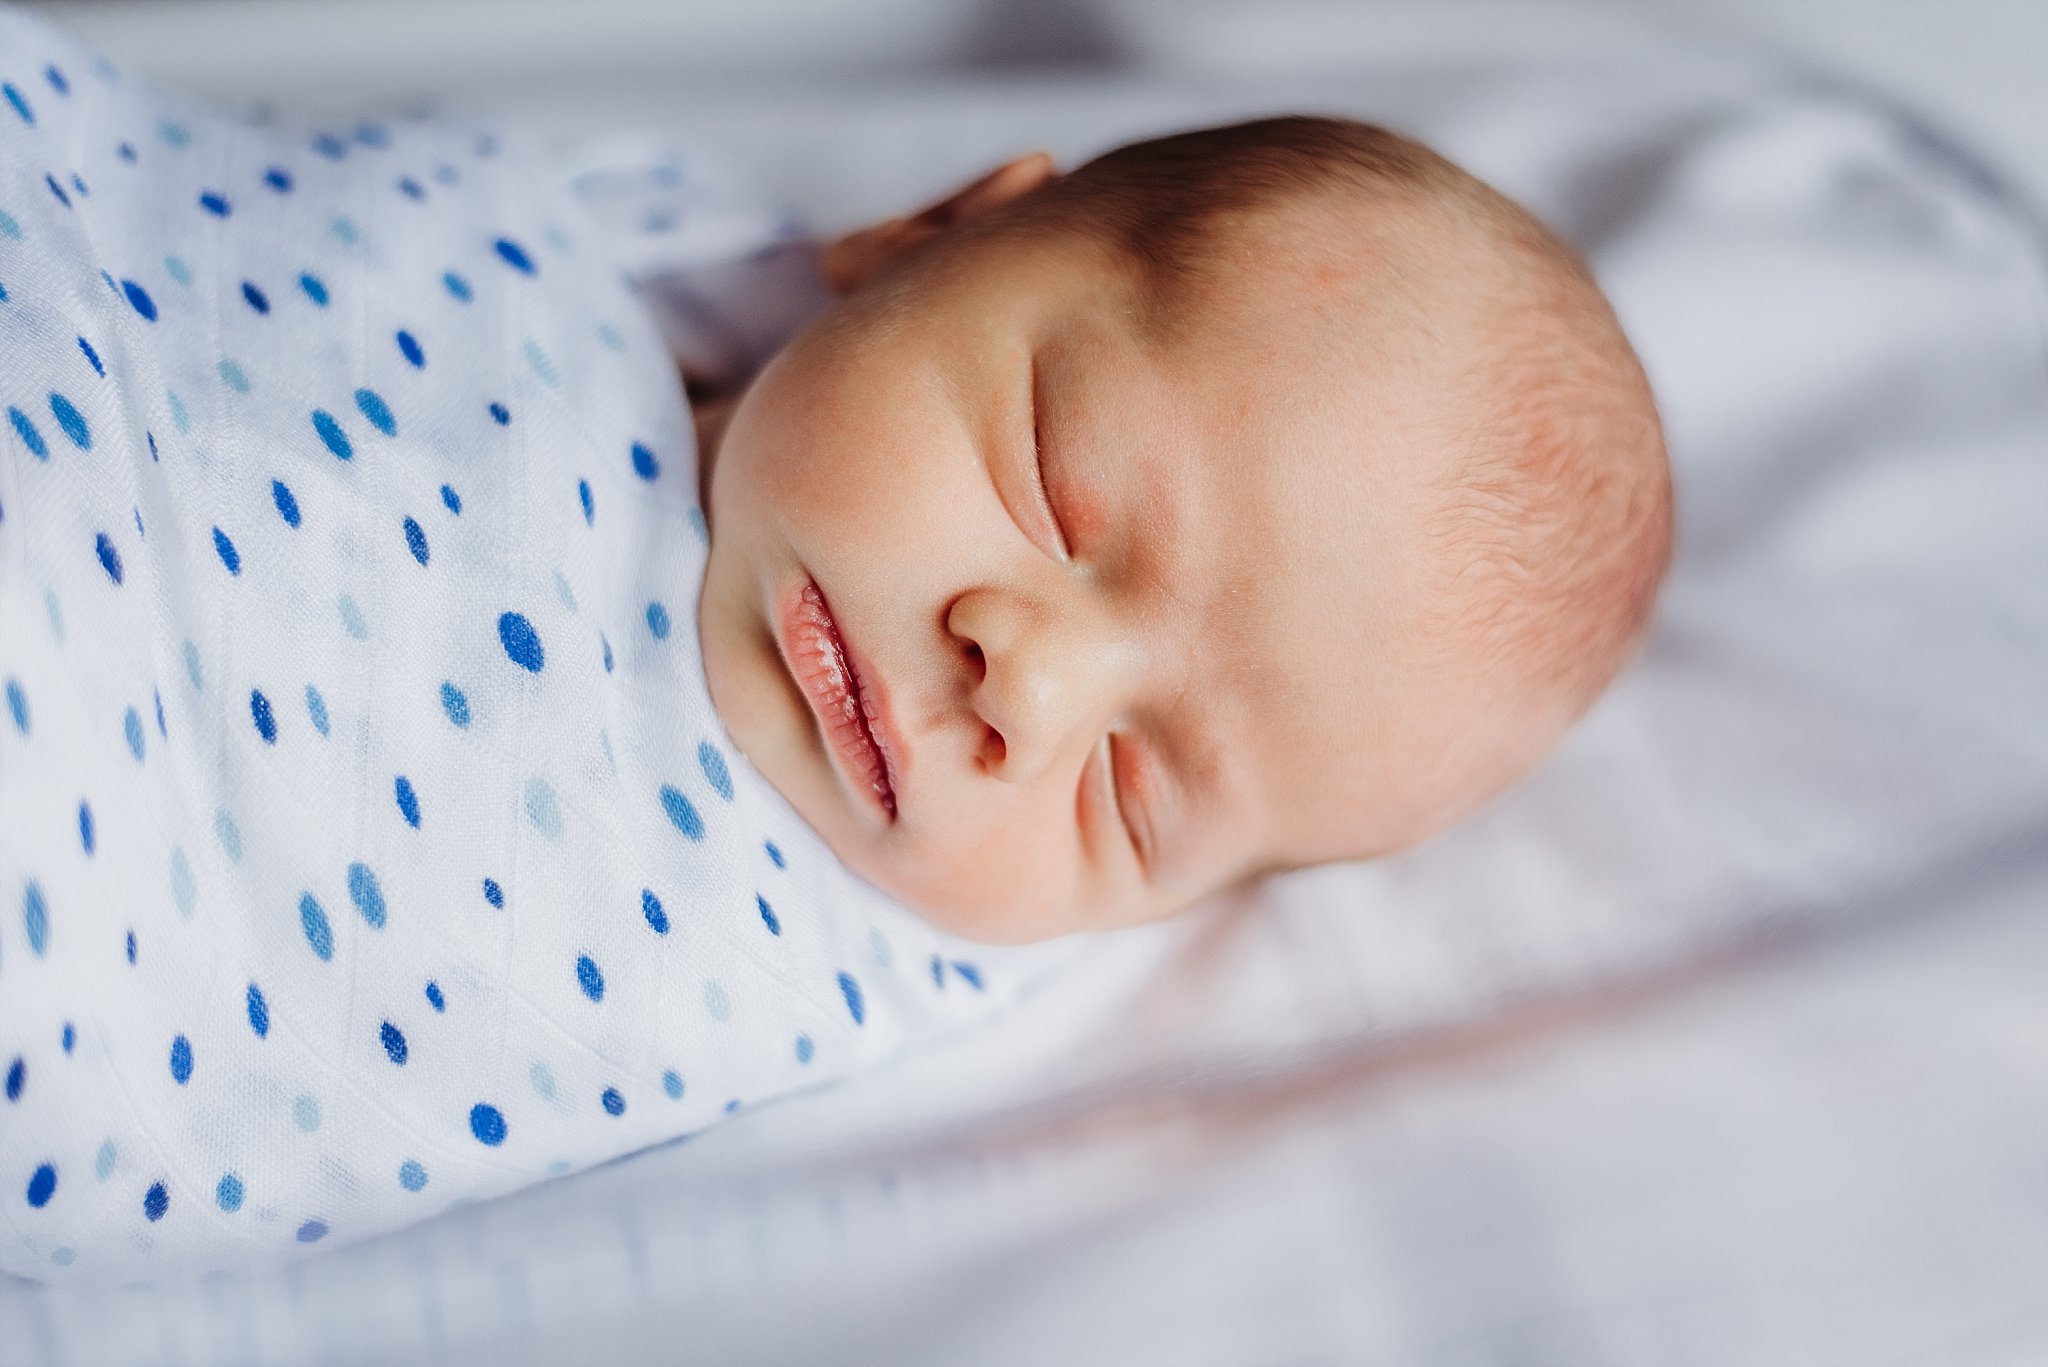 newborn baby boy in hospital bassinet